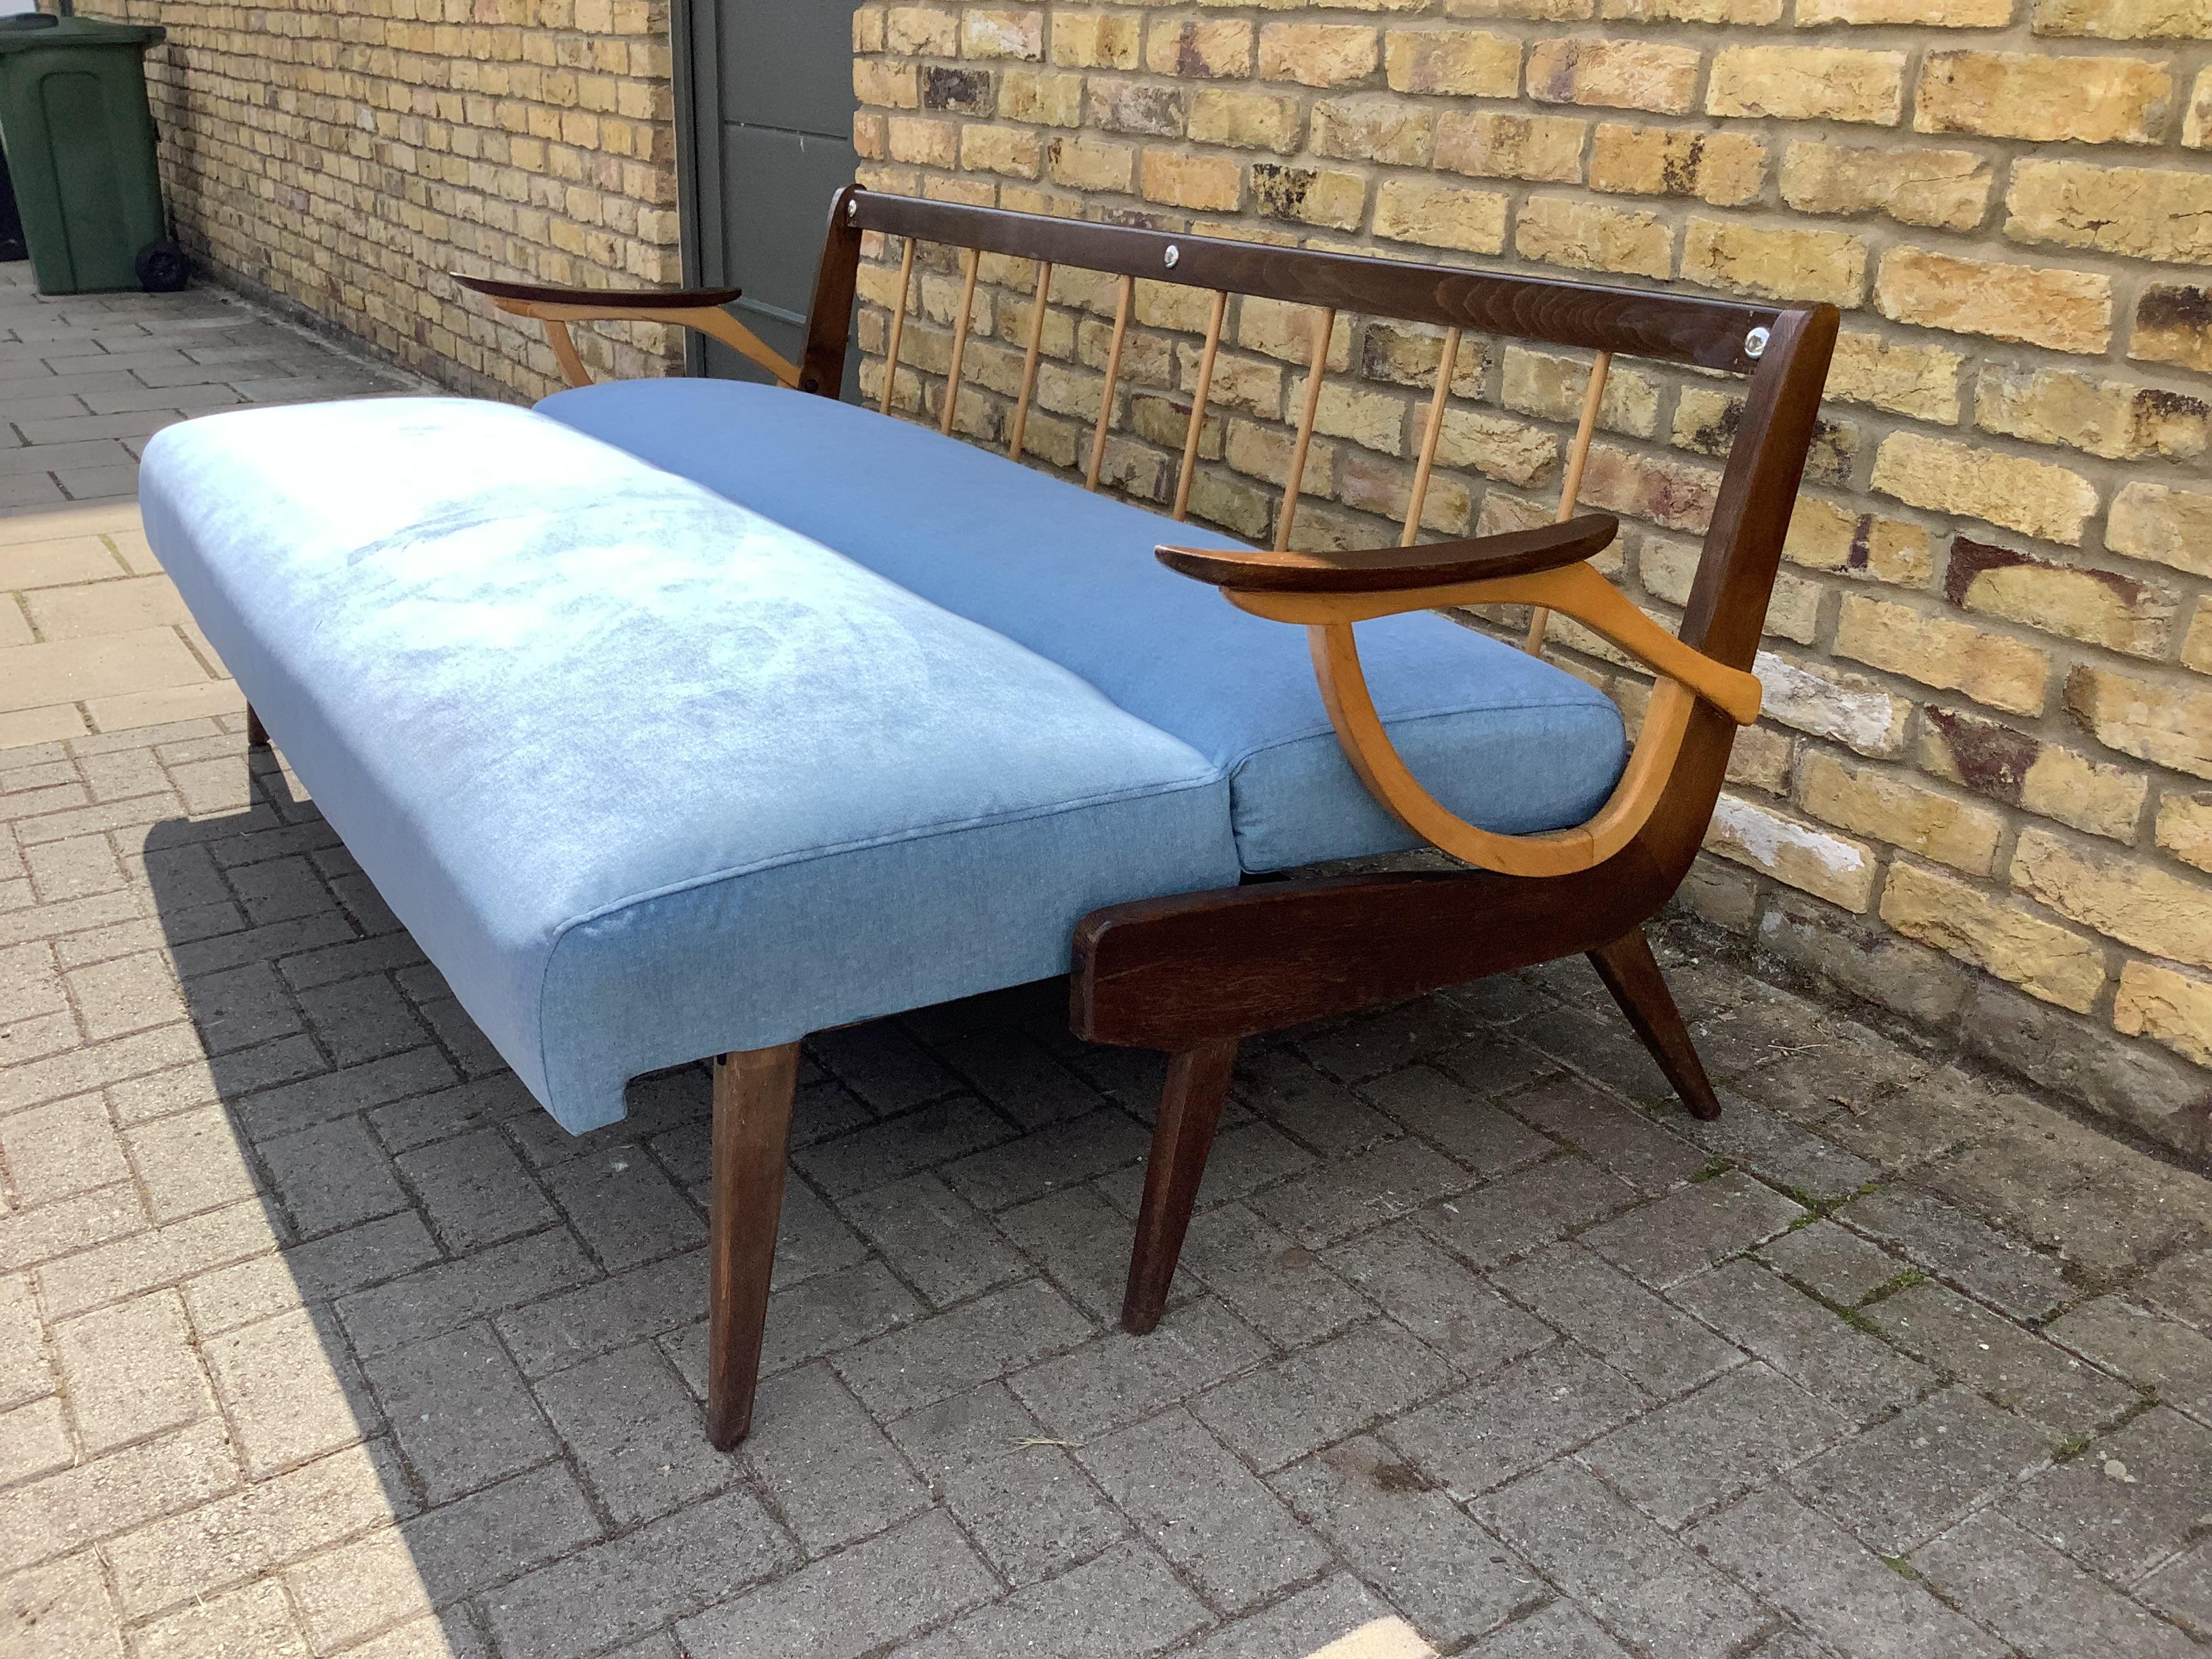 Superbe canapé-lit rembourré avec un magnifique tissu de coton bleu clair, passe facilement d'un canapé à un lit confortable .mousse solide et fonction utile.Cc1950s